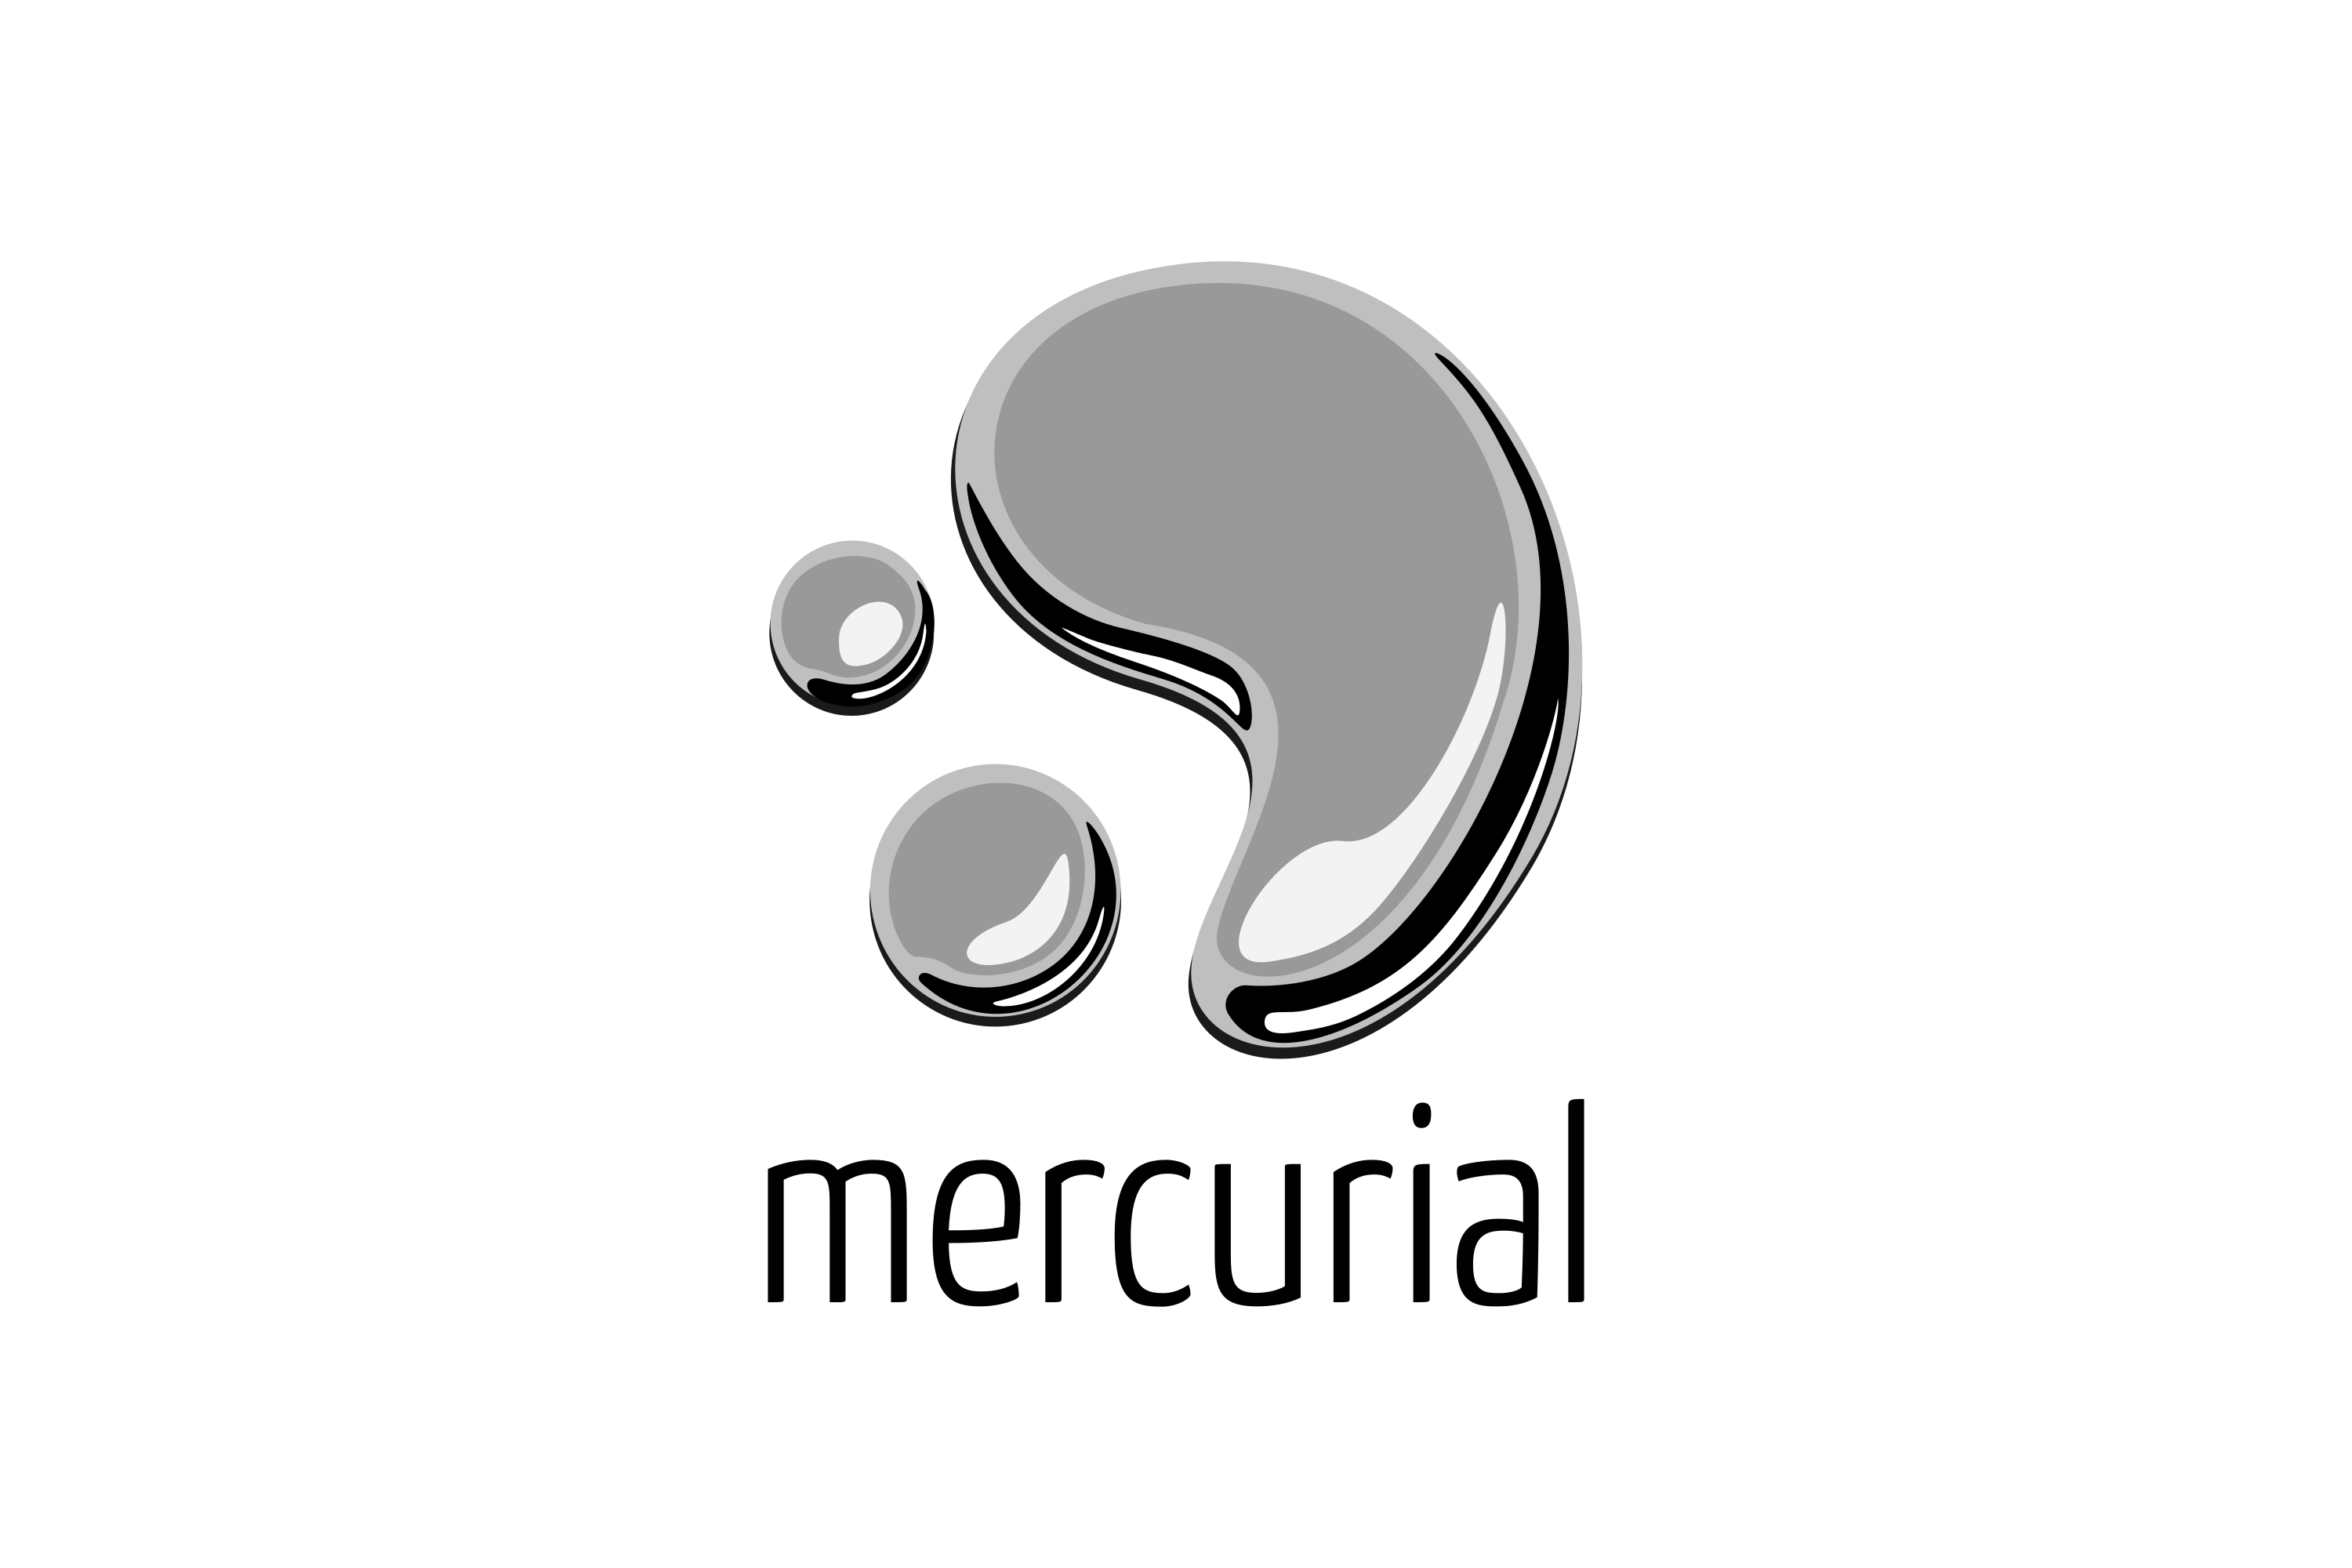 logo mercurial